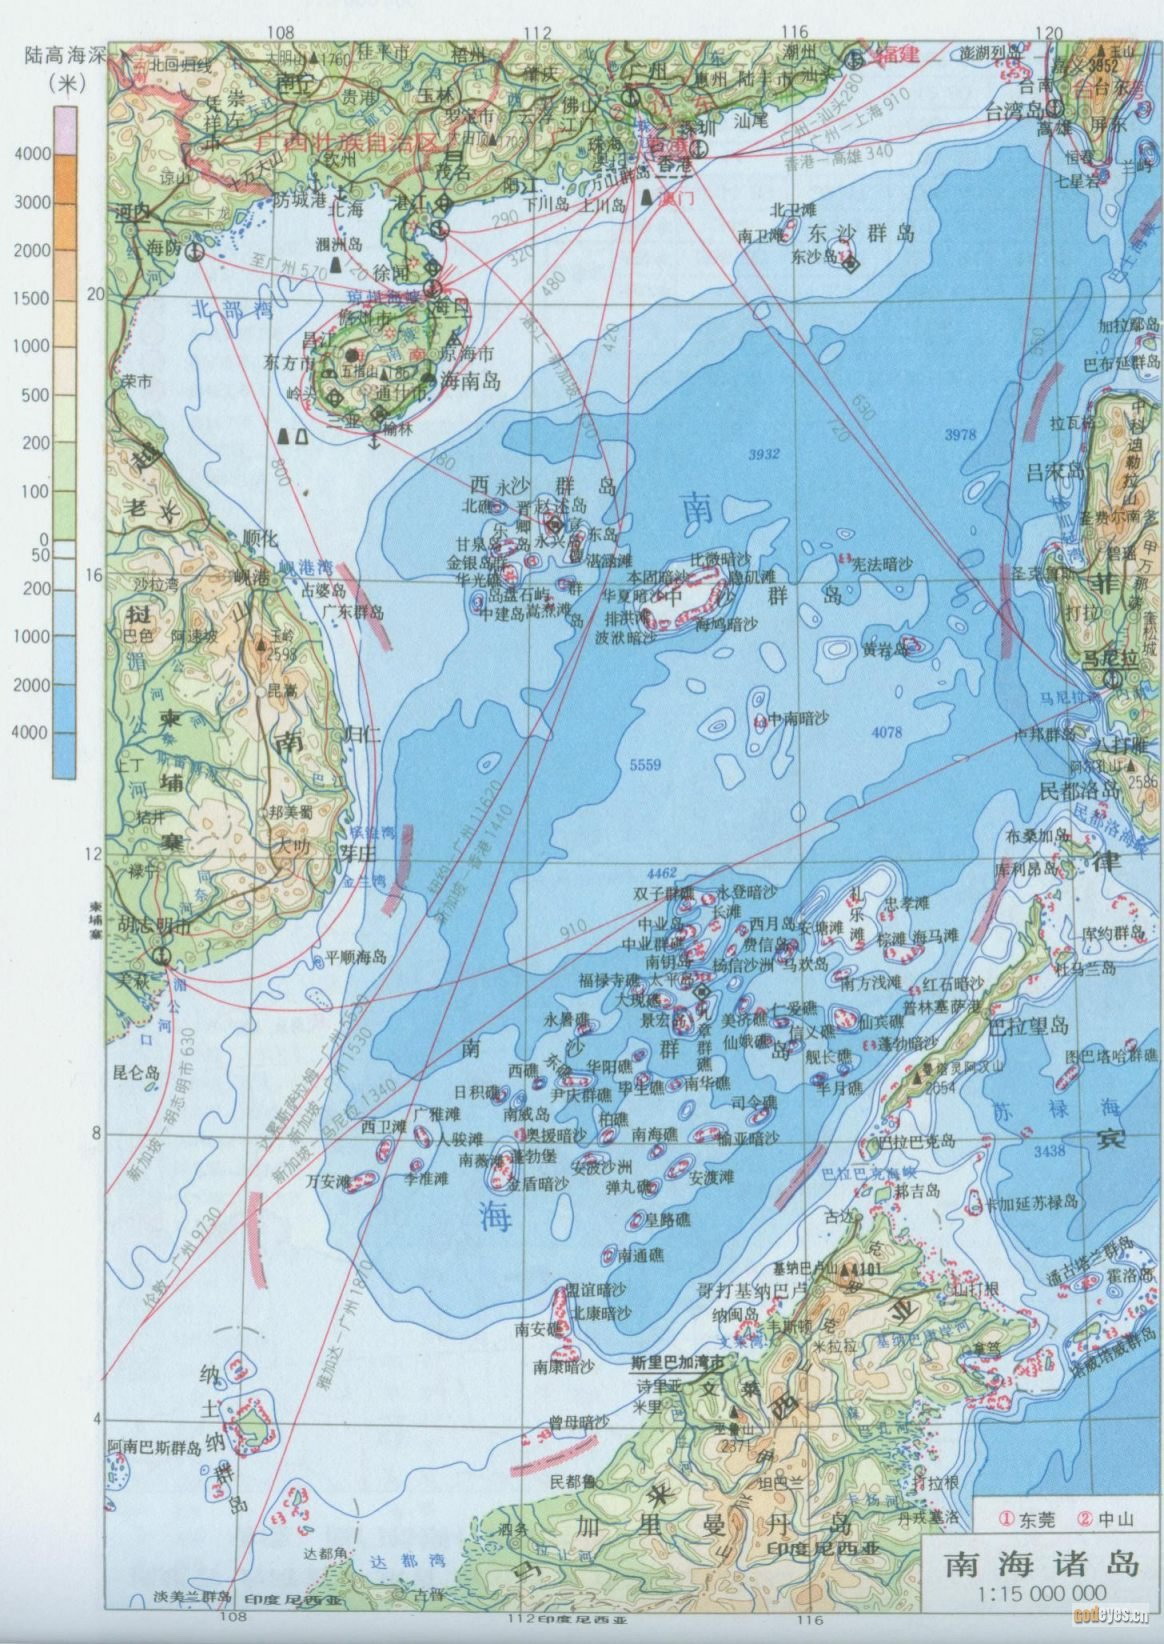 几张南海地图大图